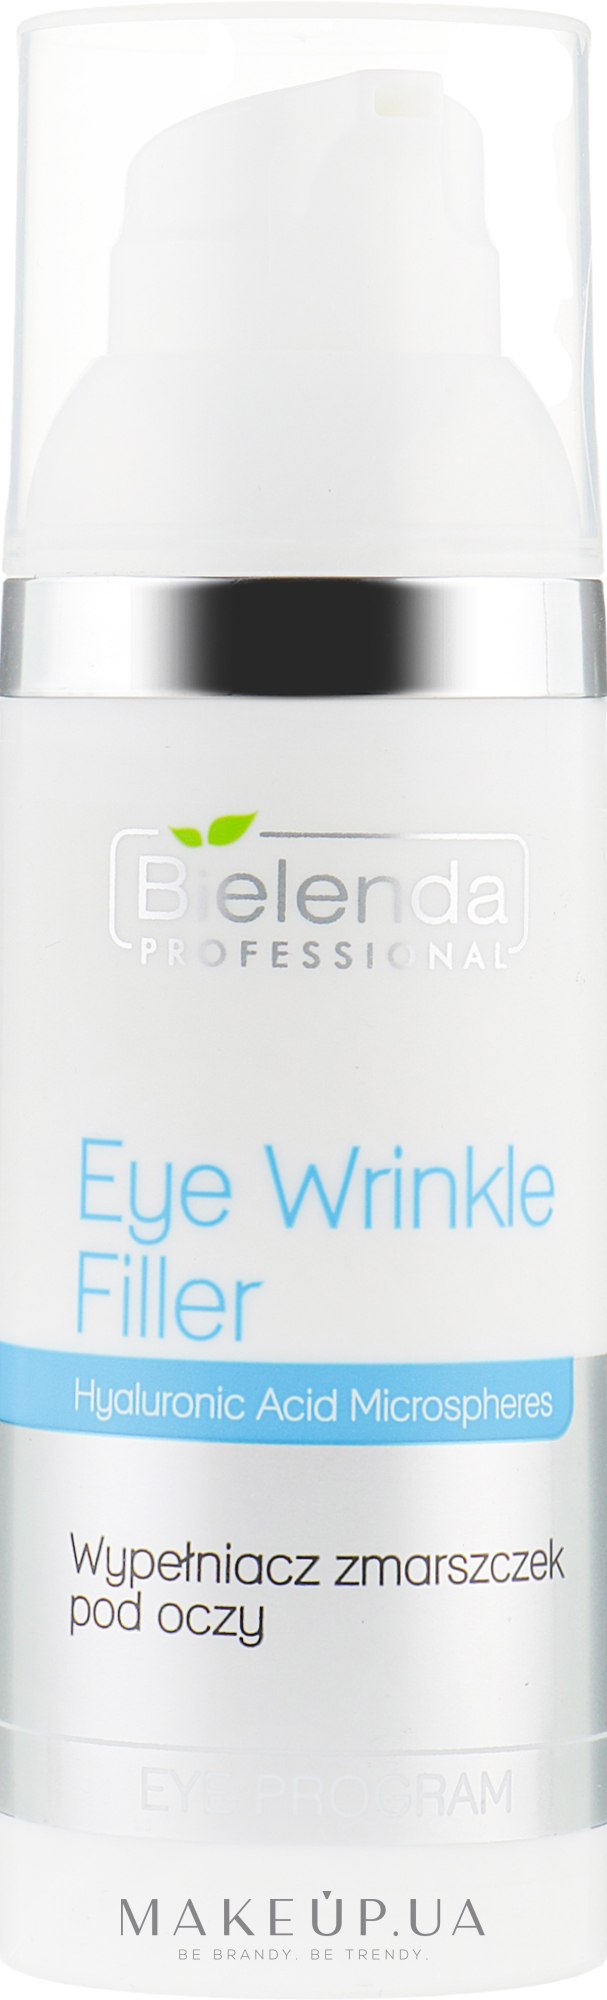 Филлер для заполнения морщин вокруг глаз - Bielenda Professional Program Eye Wrinkle Filler — фото 50ml